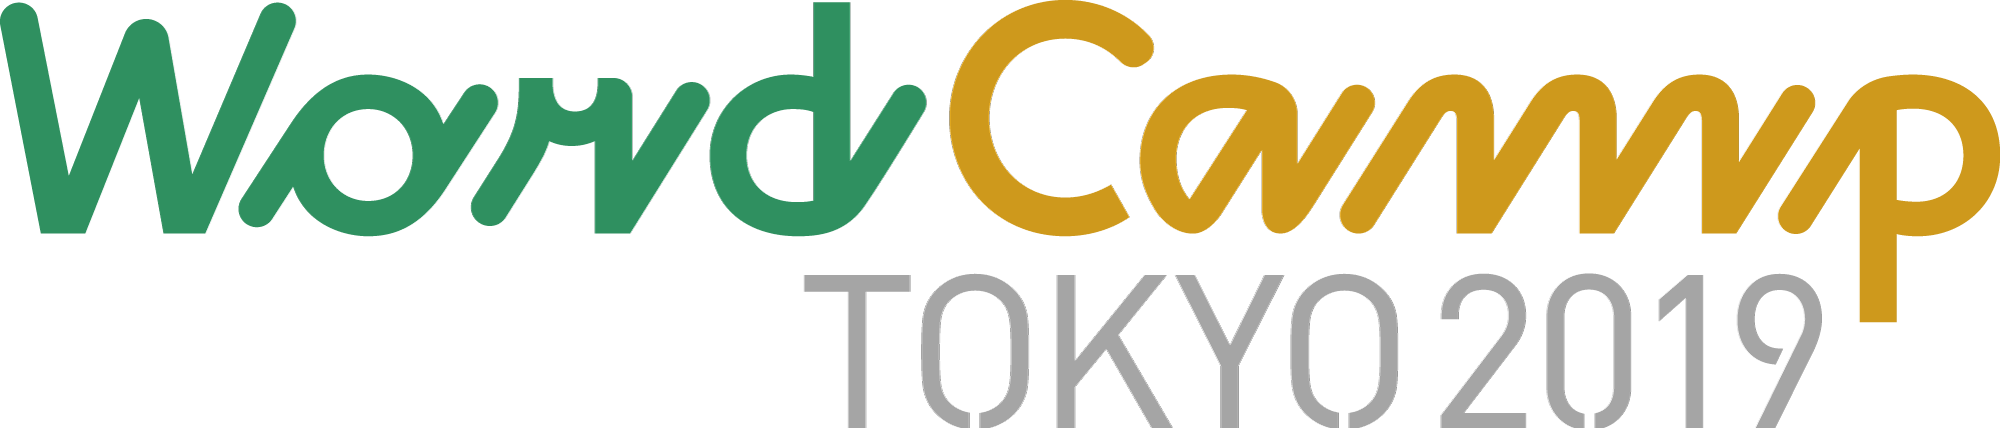 WordCamp Tokyo 2019